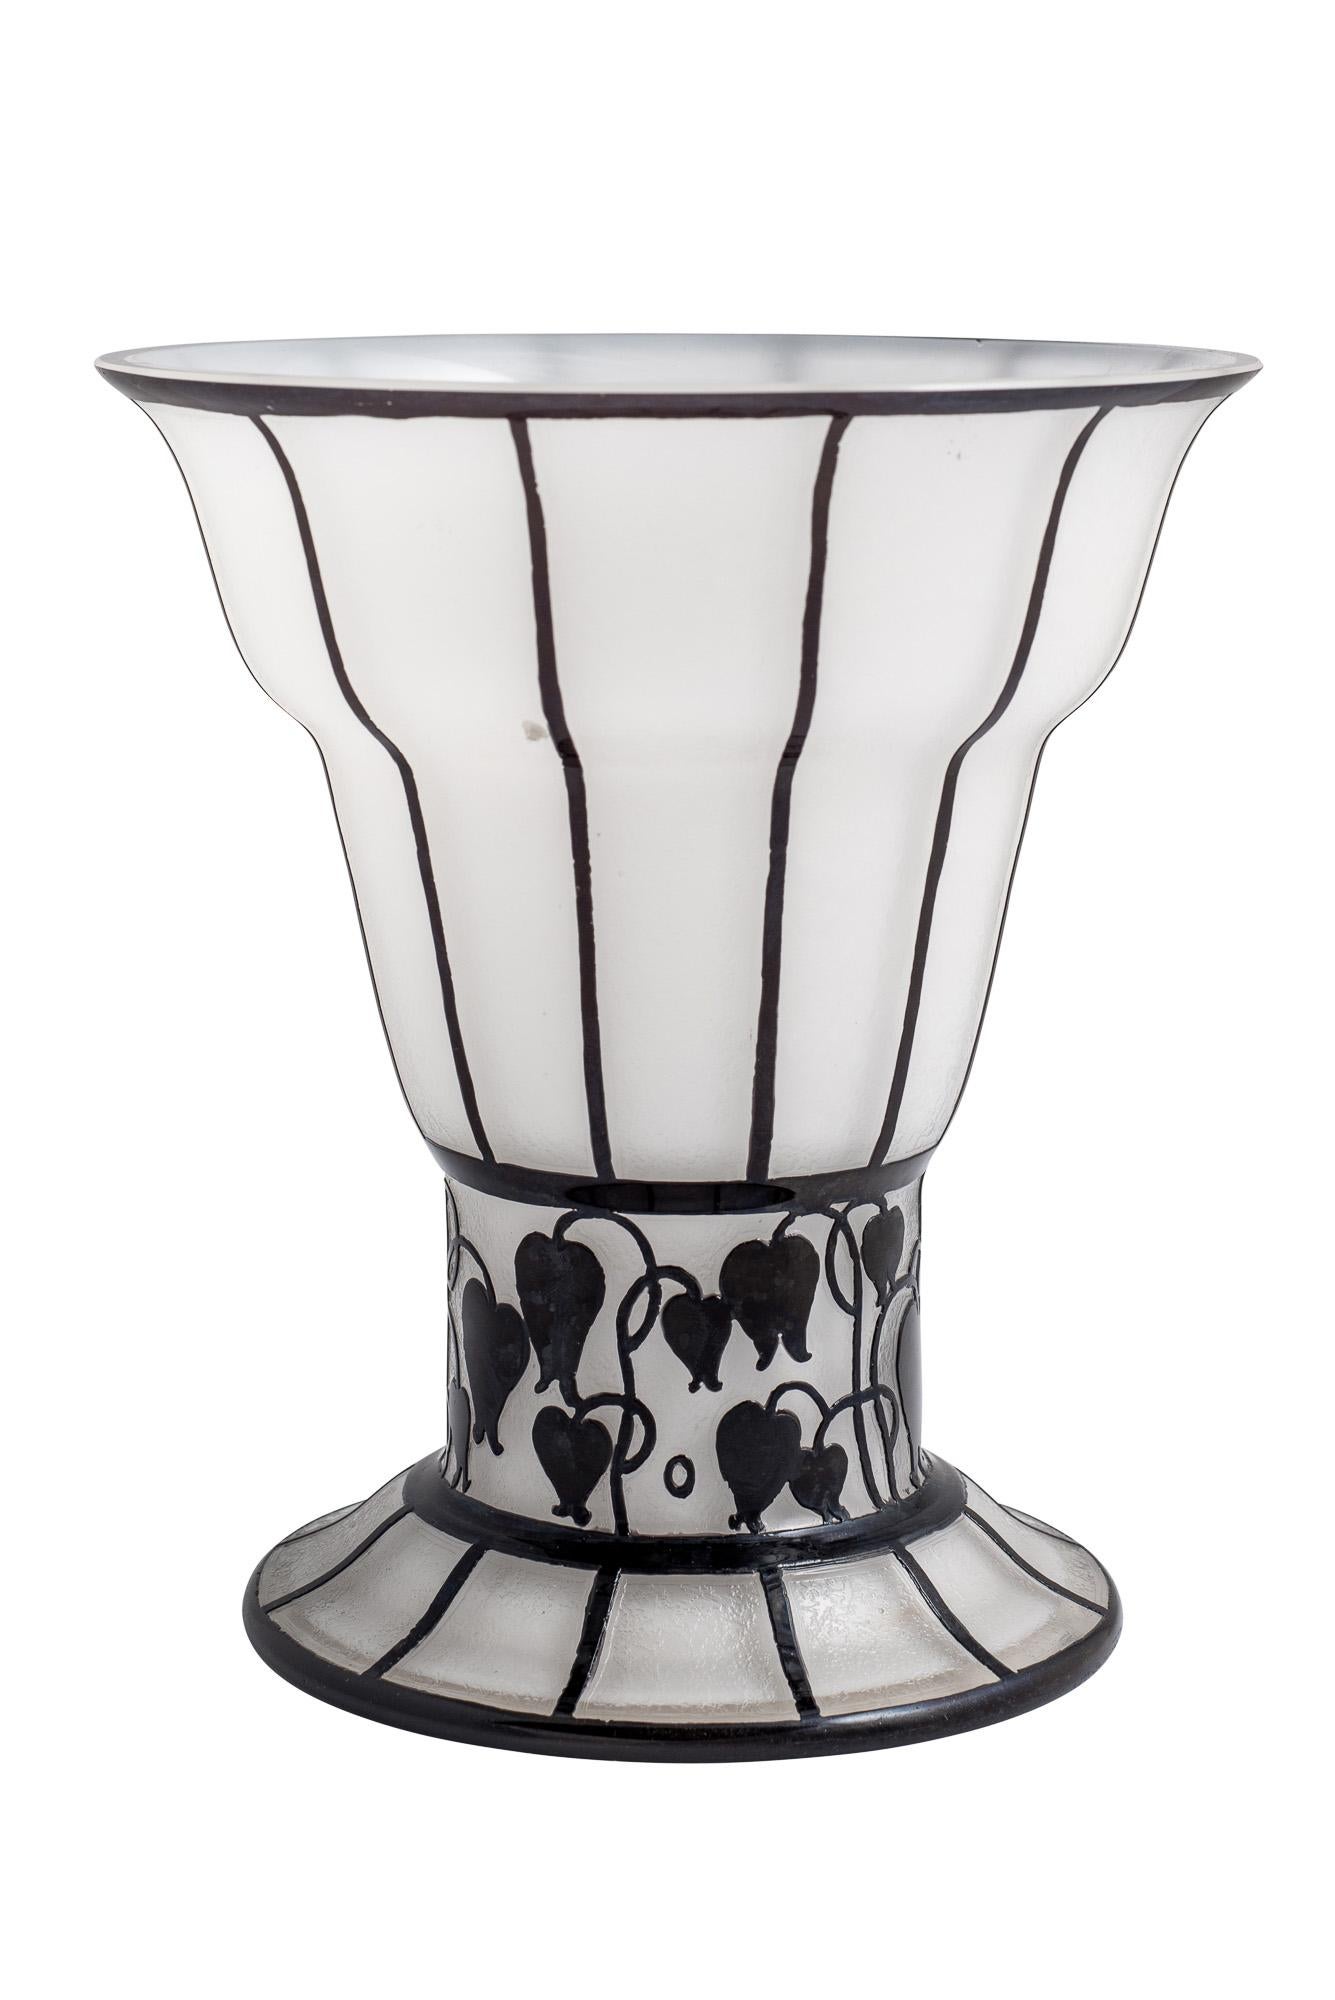 Art Glass Jugendstil Etched Glass Vase Goblet White Black, circa 1915 Hans Bolek Loetz For Sale